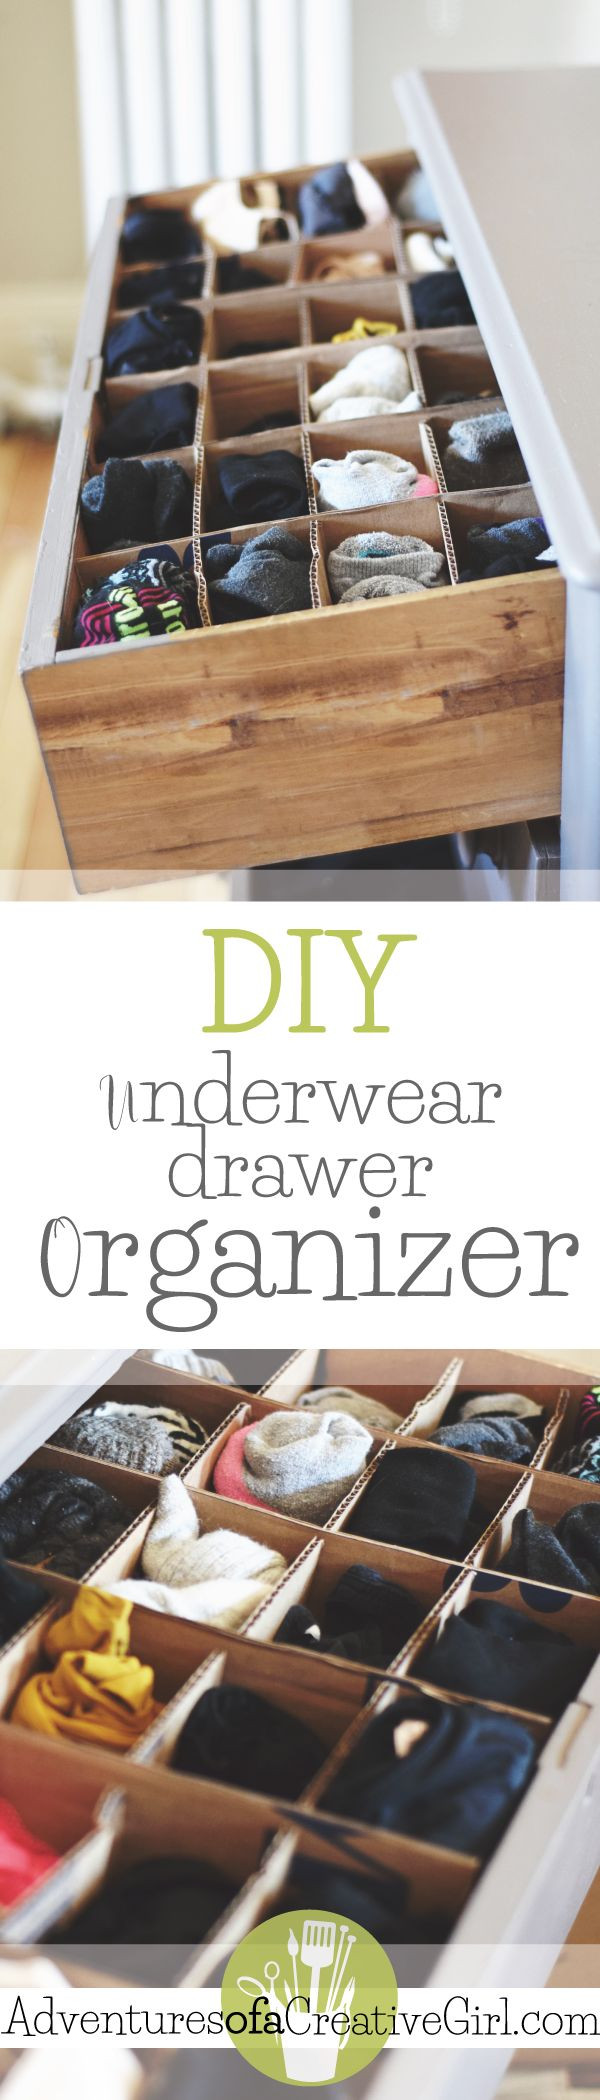 Best ideas about DIY Underwear Organizer
. Save or Pin Underwear Drawer Organizer DIY Now.